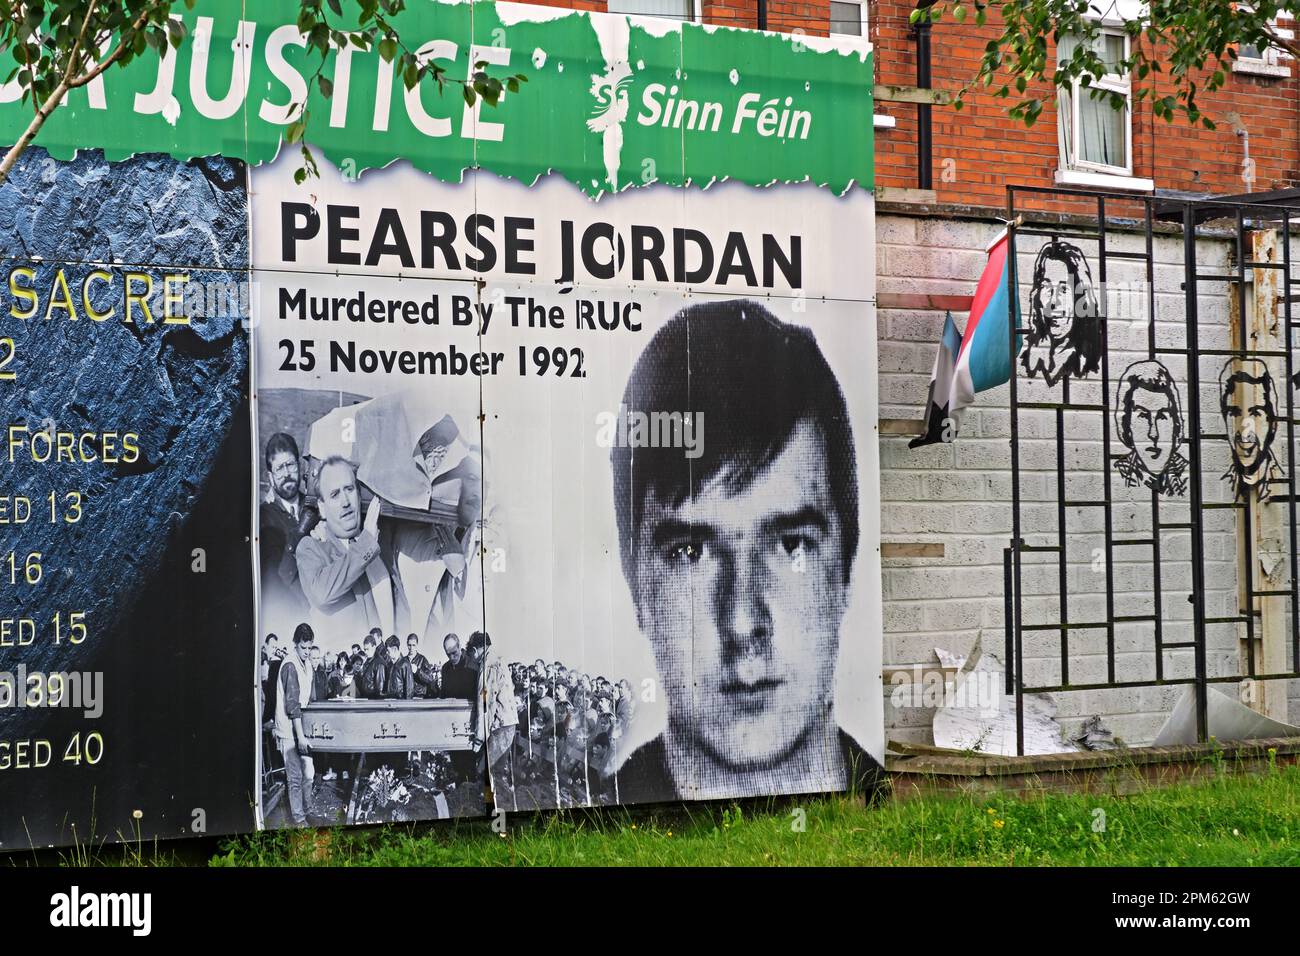 Le juge Sinn Fein - Pearse Jordan, assassiné par la RUC, le 25 novembre 1992 Banque D'Images